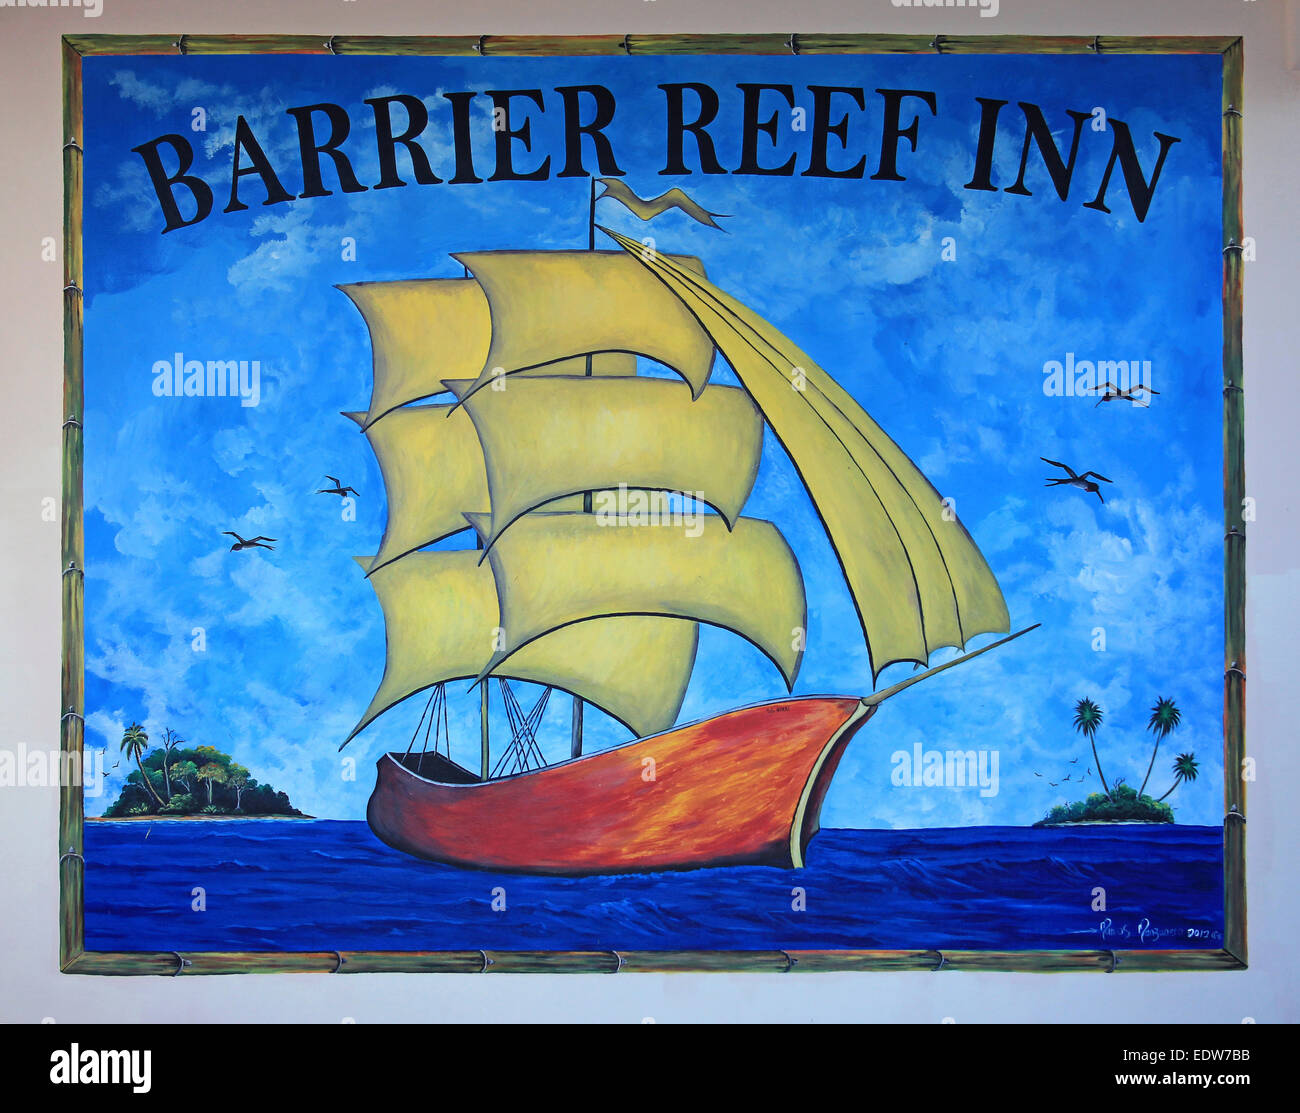 Barrier Reef Inn Sign On Caye Caulker, Belize Stock Photo